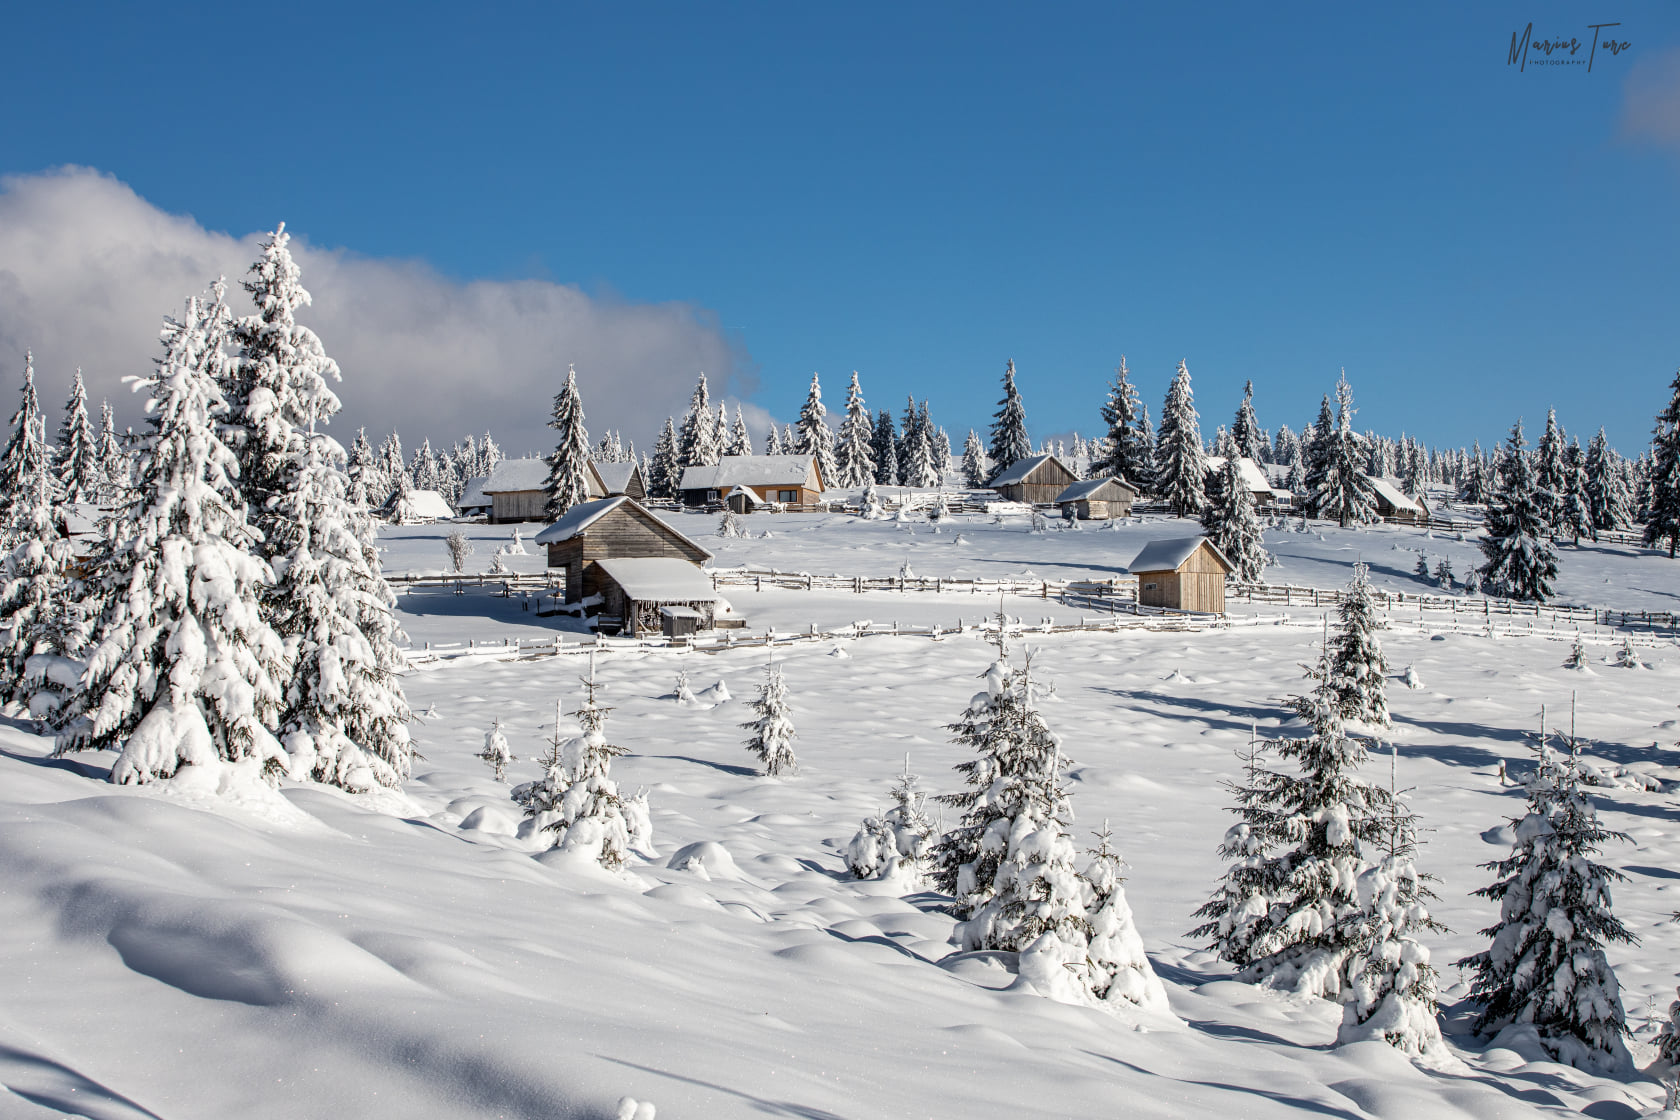  Iarna pe dealurile motilor - Marius Turc